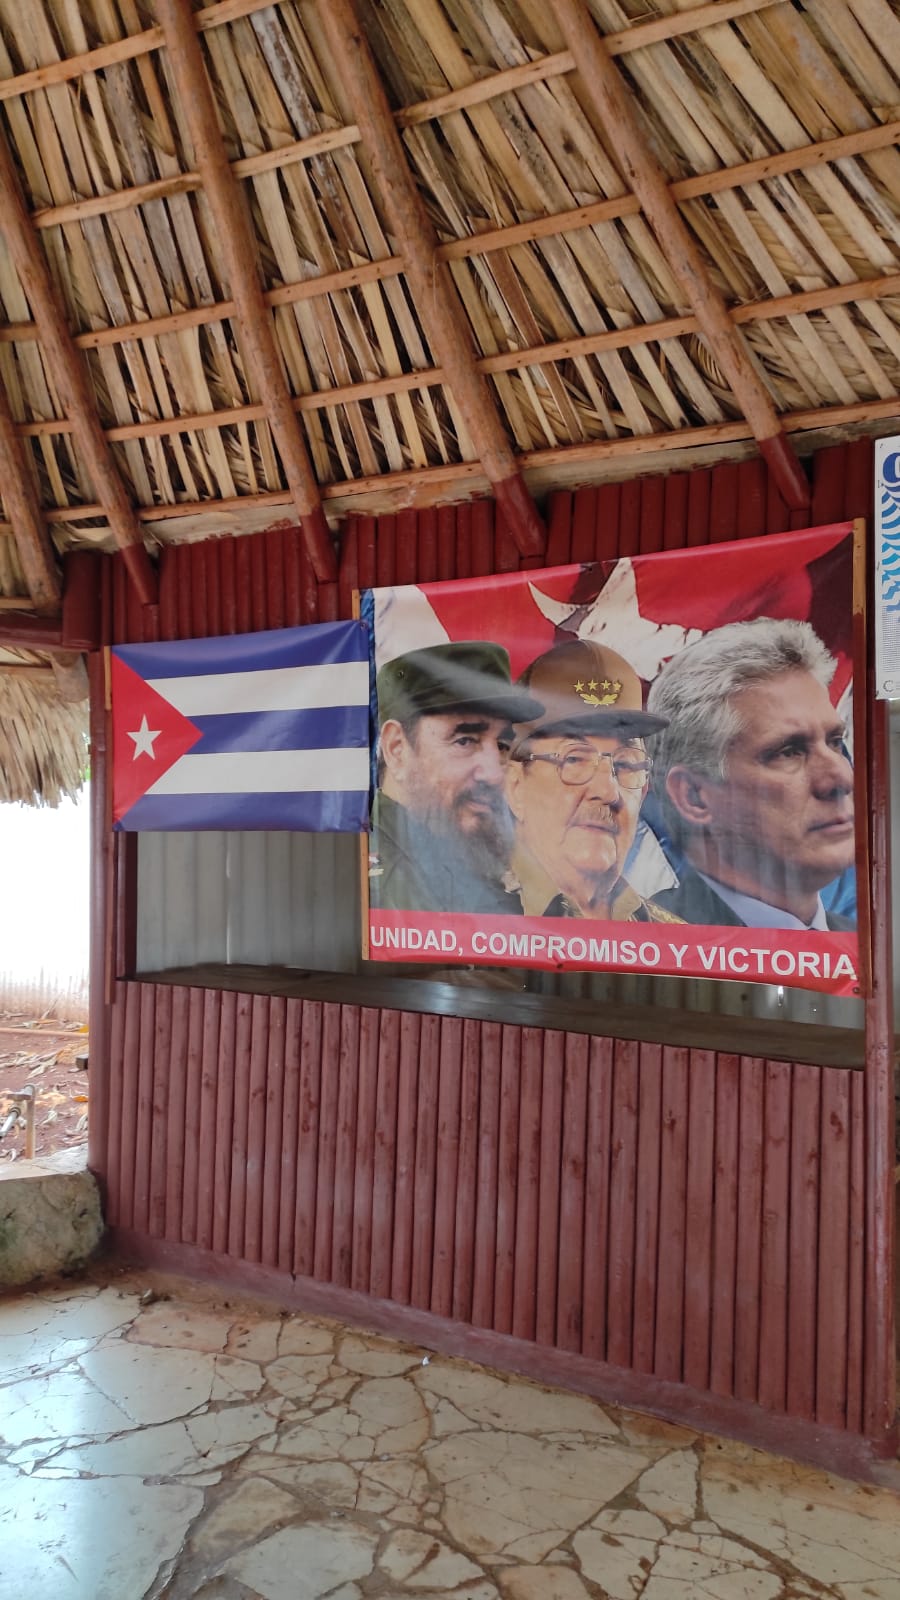 Rede auf der internationalen Konferenz in Kuba am 2. Mai für Solidarität und Antiimperialismus